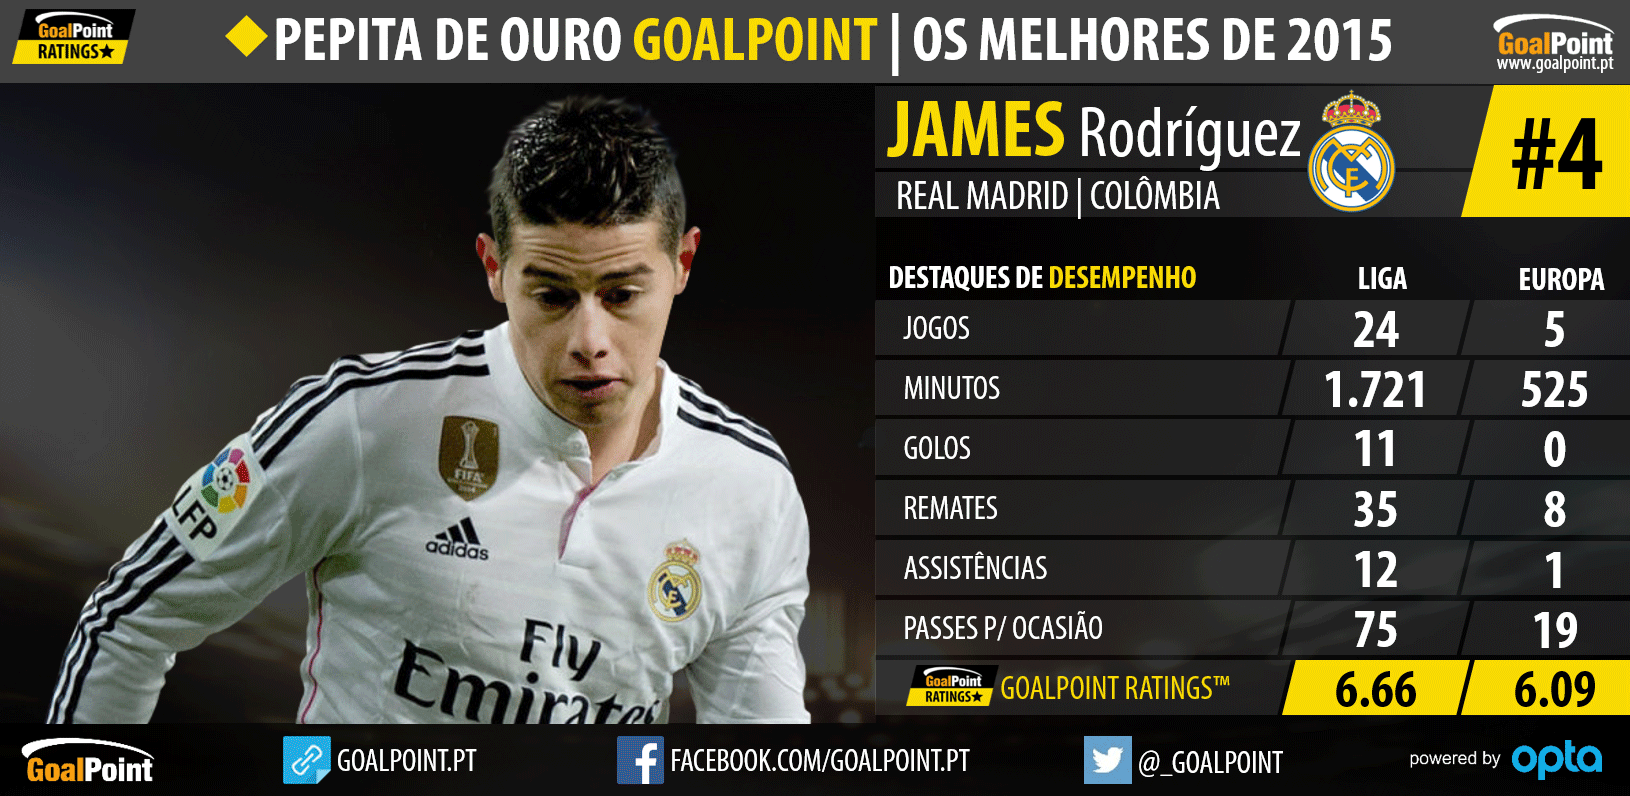 Pepita de Ouro GoalPoint™ 2015: Os melhores do Mundo - James